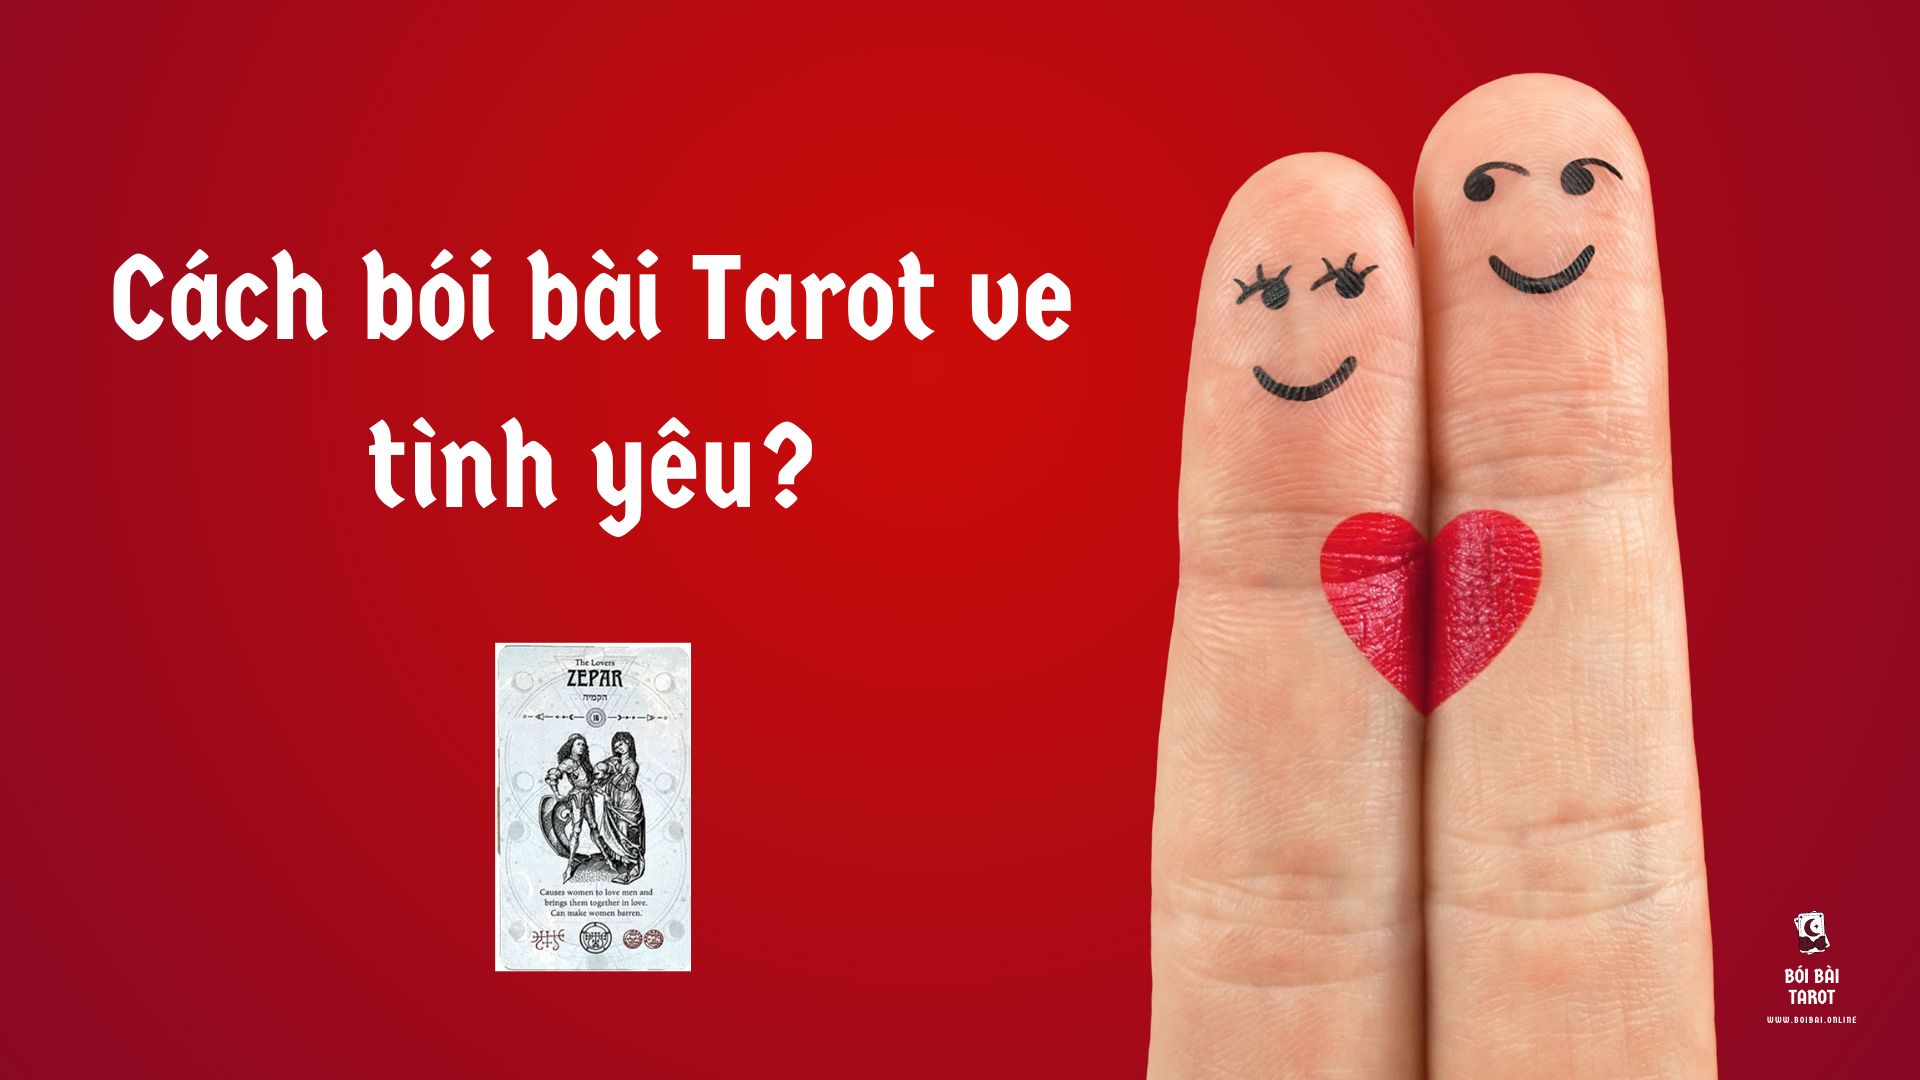 Cách bói bài Tarot về tình yêu?